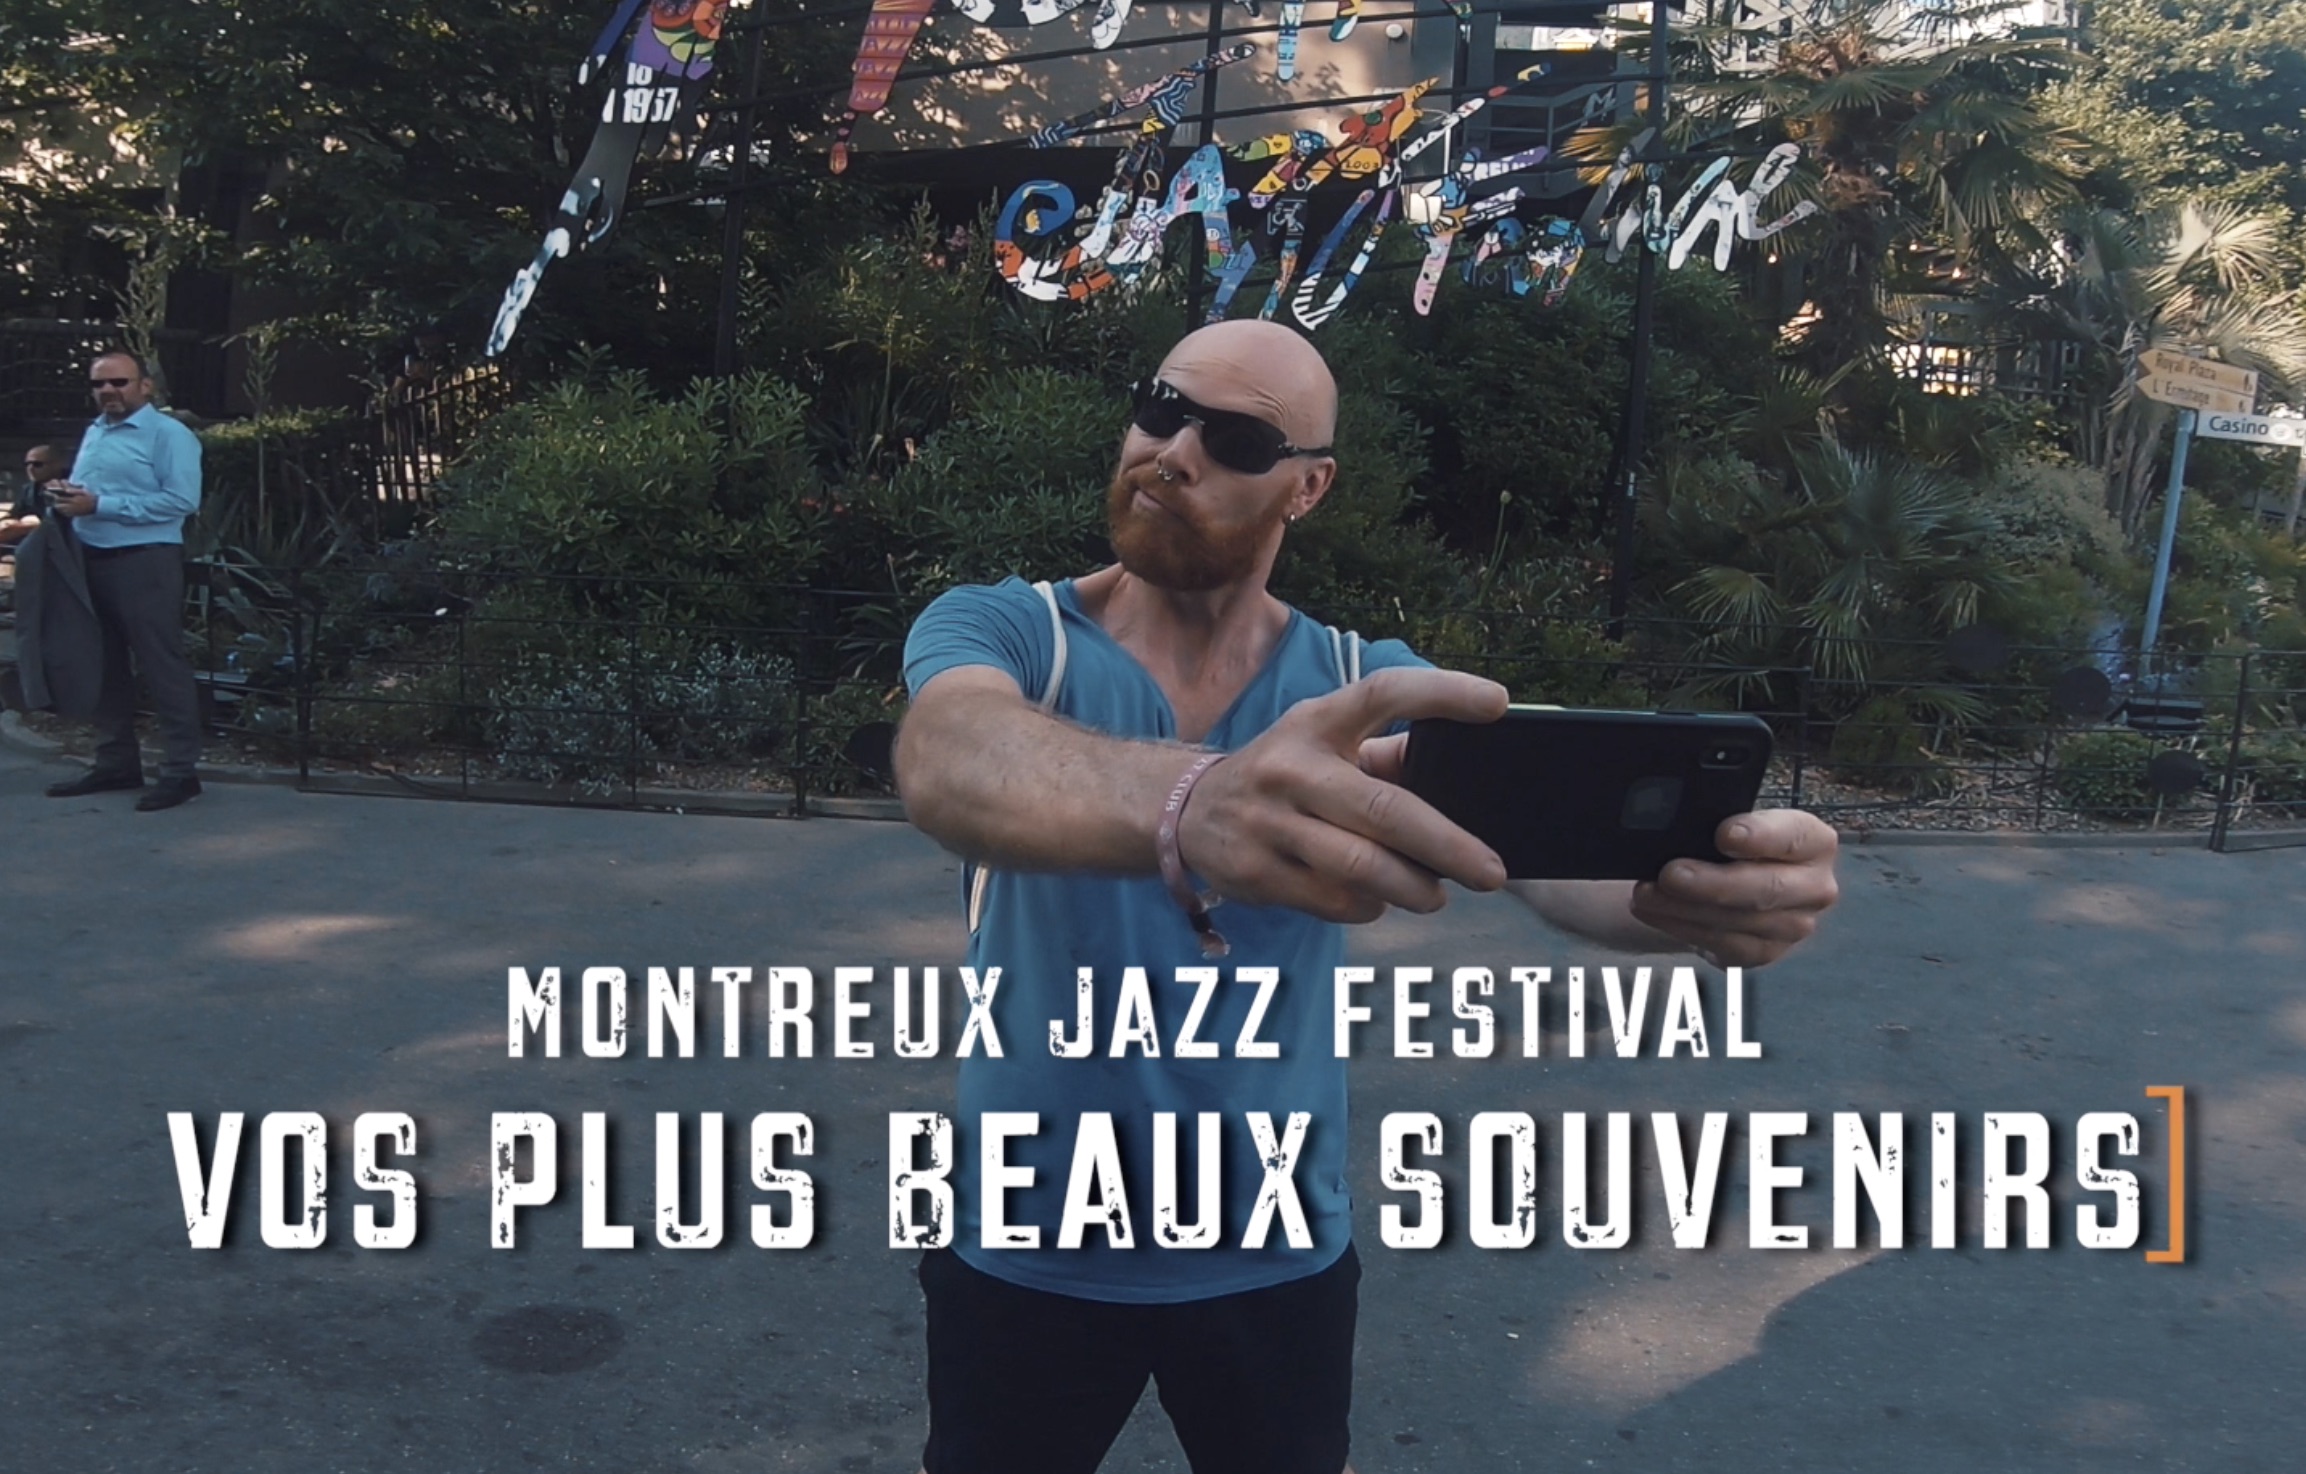 Vos plus souvenirs du Montreux Jazz Festival, épisode 2